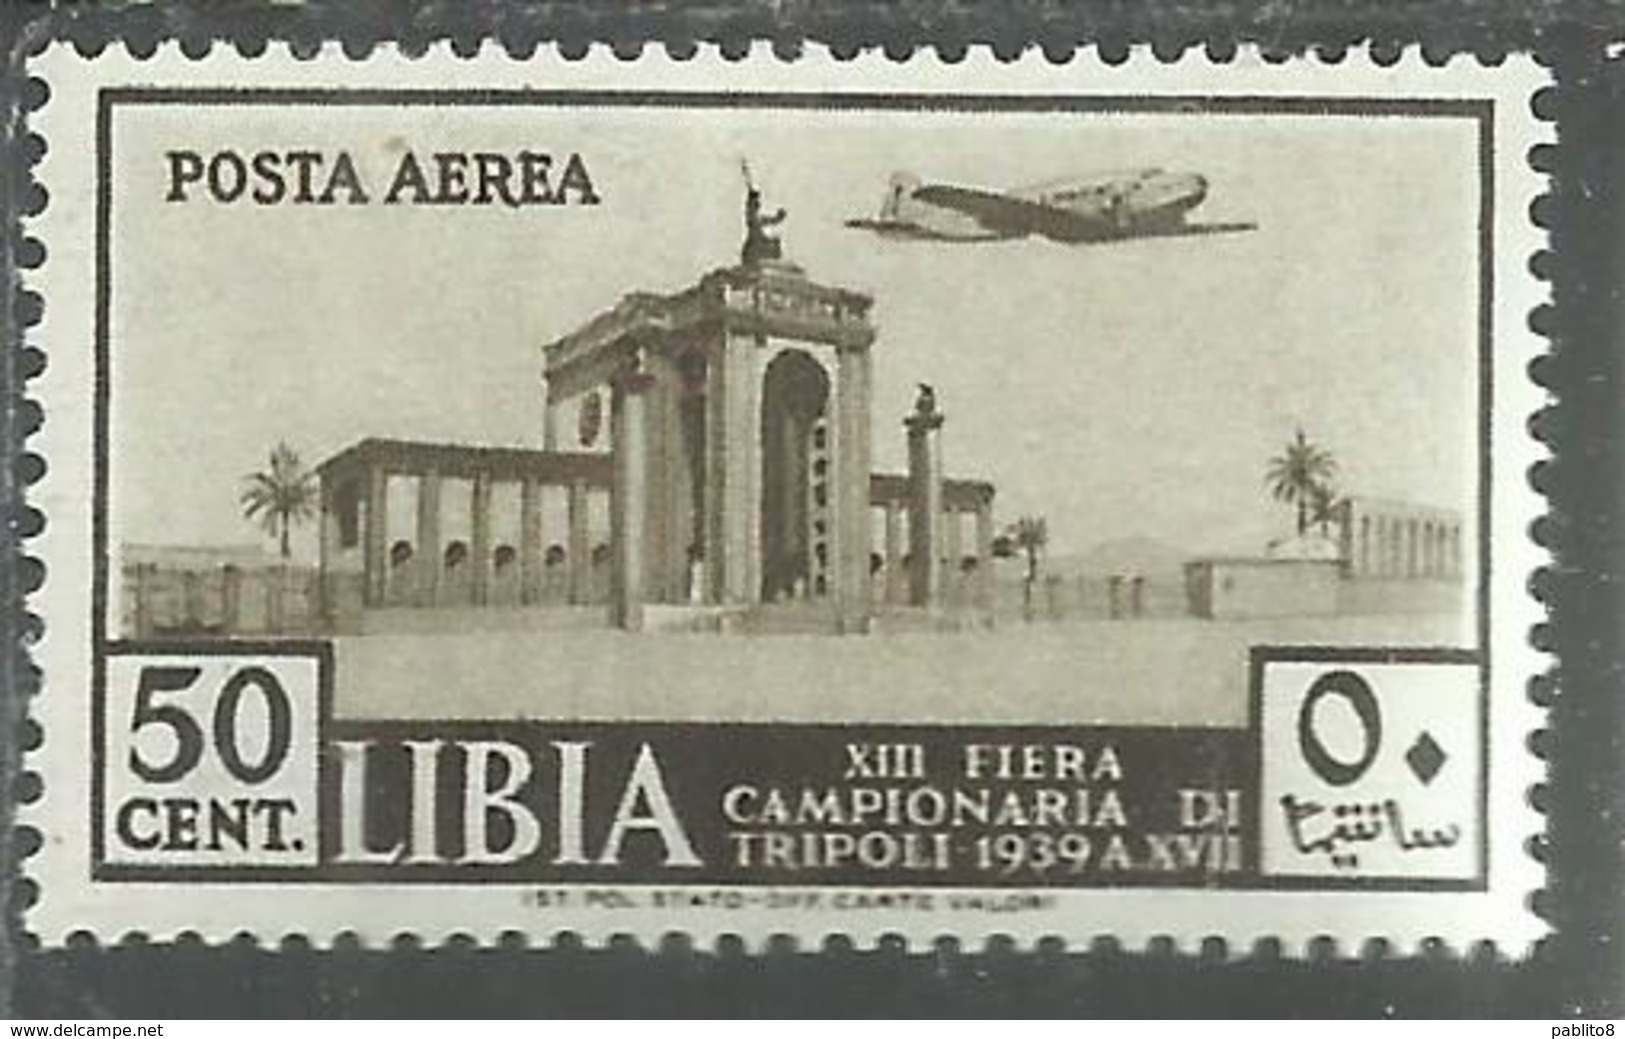 LIBIA 1939 POSTA AEREA AIR MAIL XIII 13a FIERA DI TRIPOLI FAIR CENT. 50c MNH - Libia